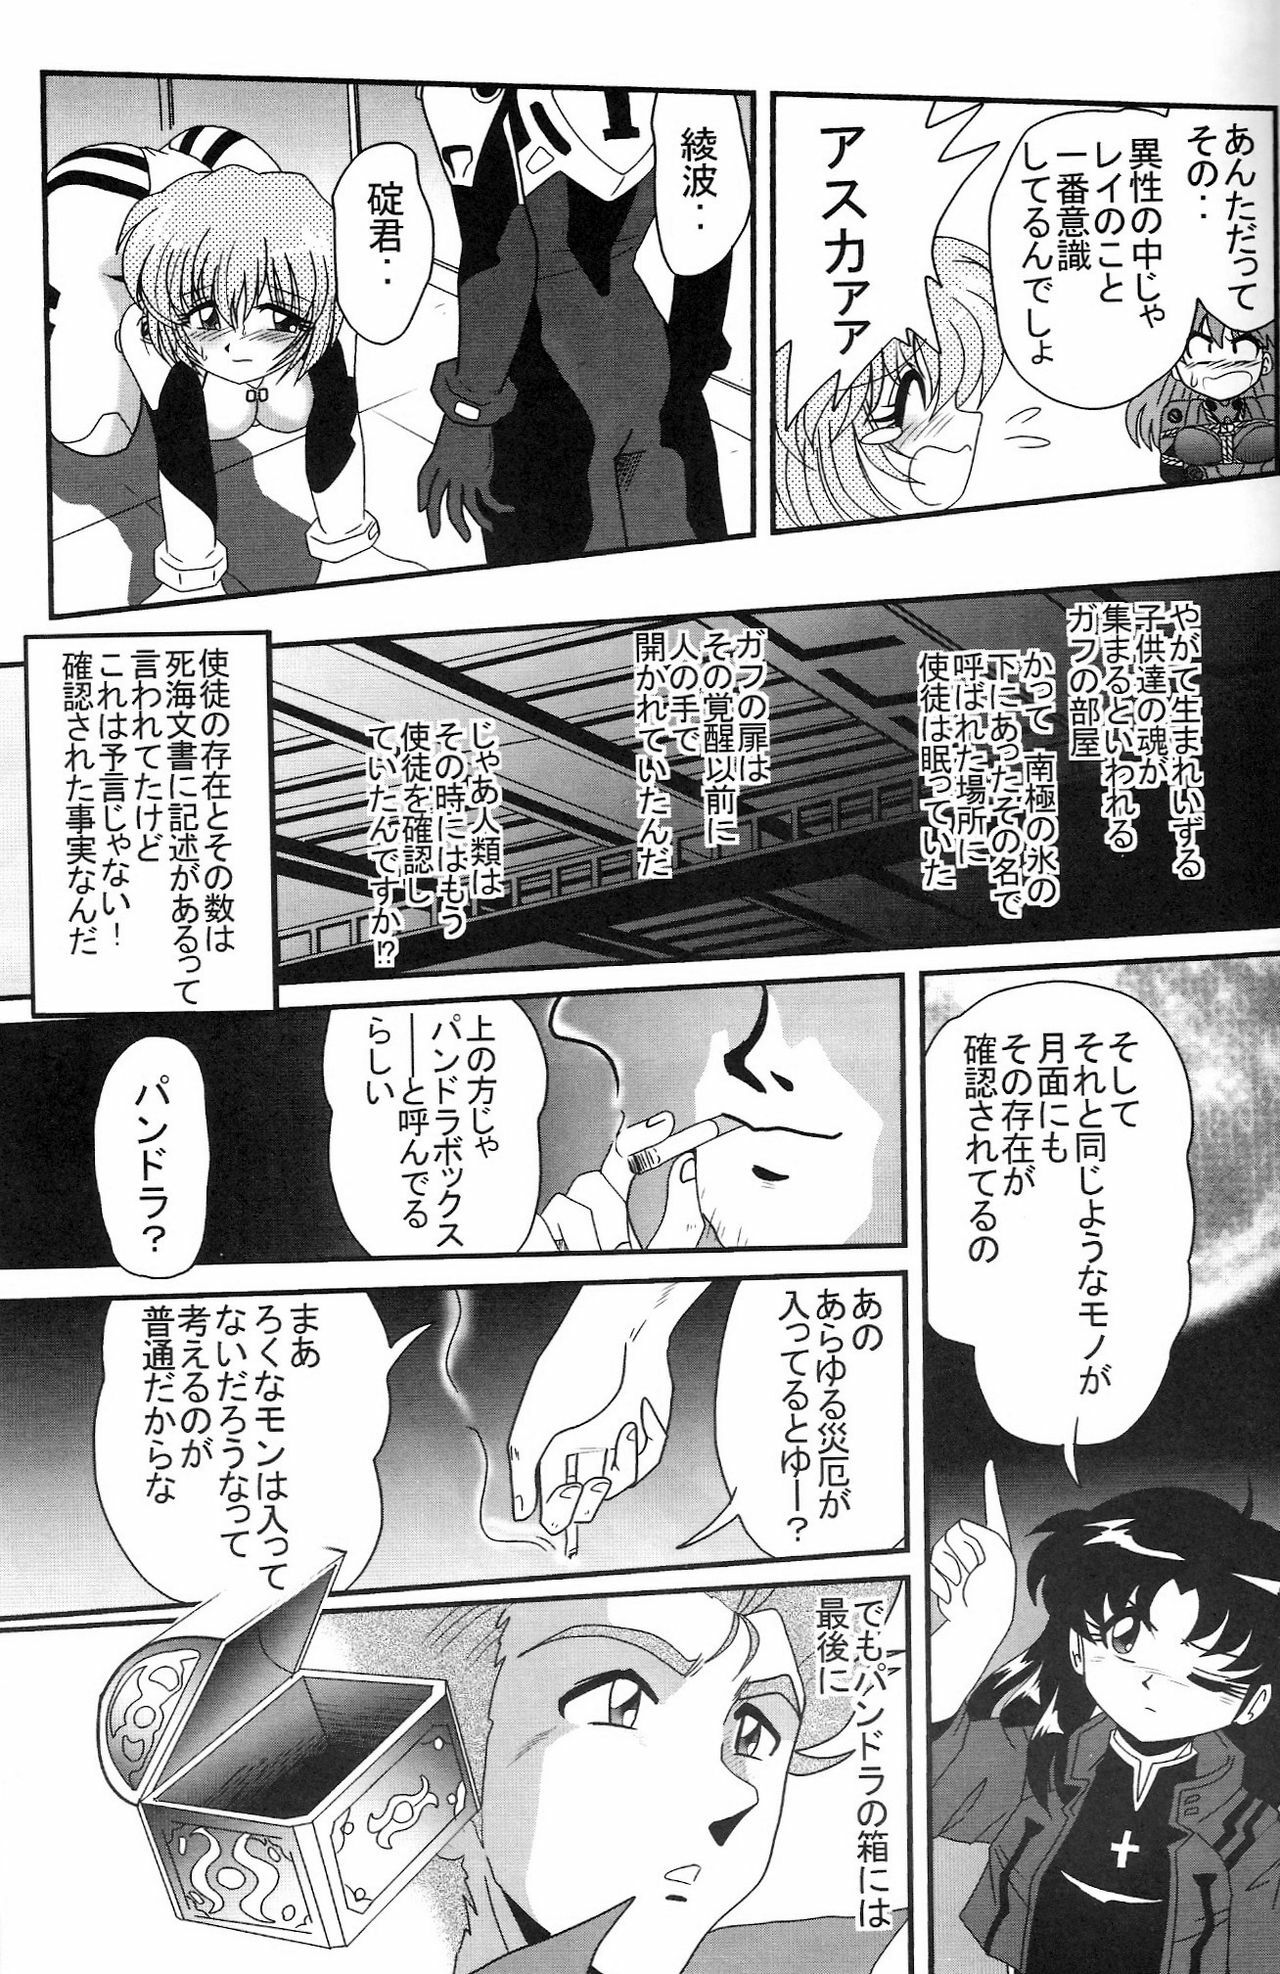 (COMIC1) [Thirty Saver Street 2D Shooting (Maki Hideto, Sawara Kazumitsu, Yonige-ya No Kyou)] Second Uchuu Keikaku 2 (Neon Genesis Evangelion) page 17 full